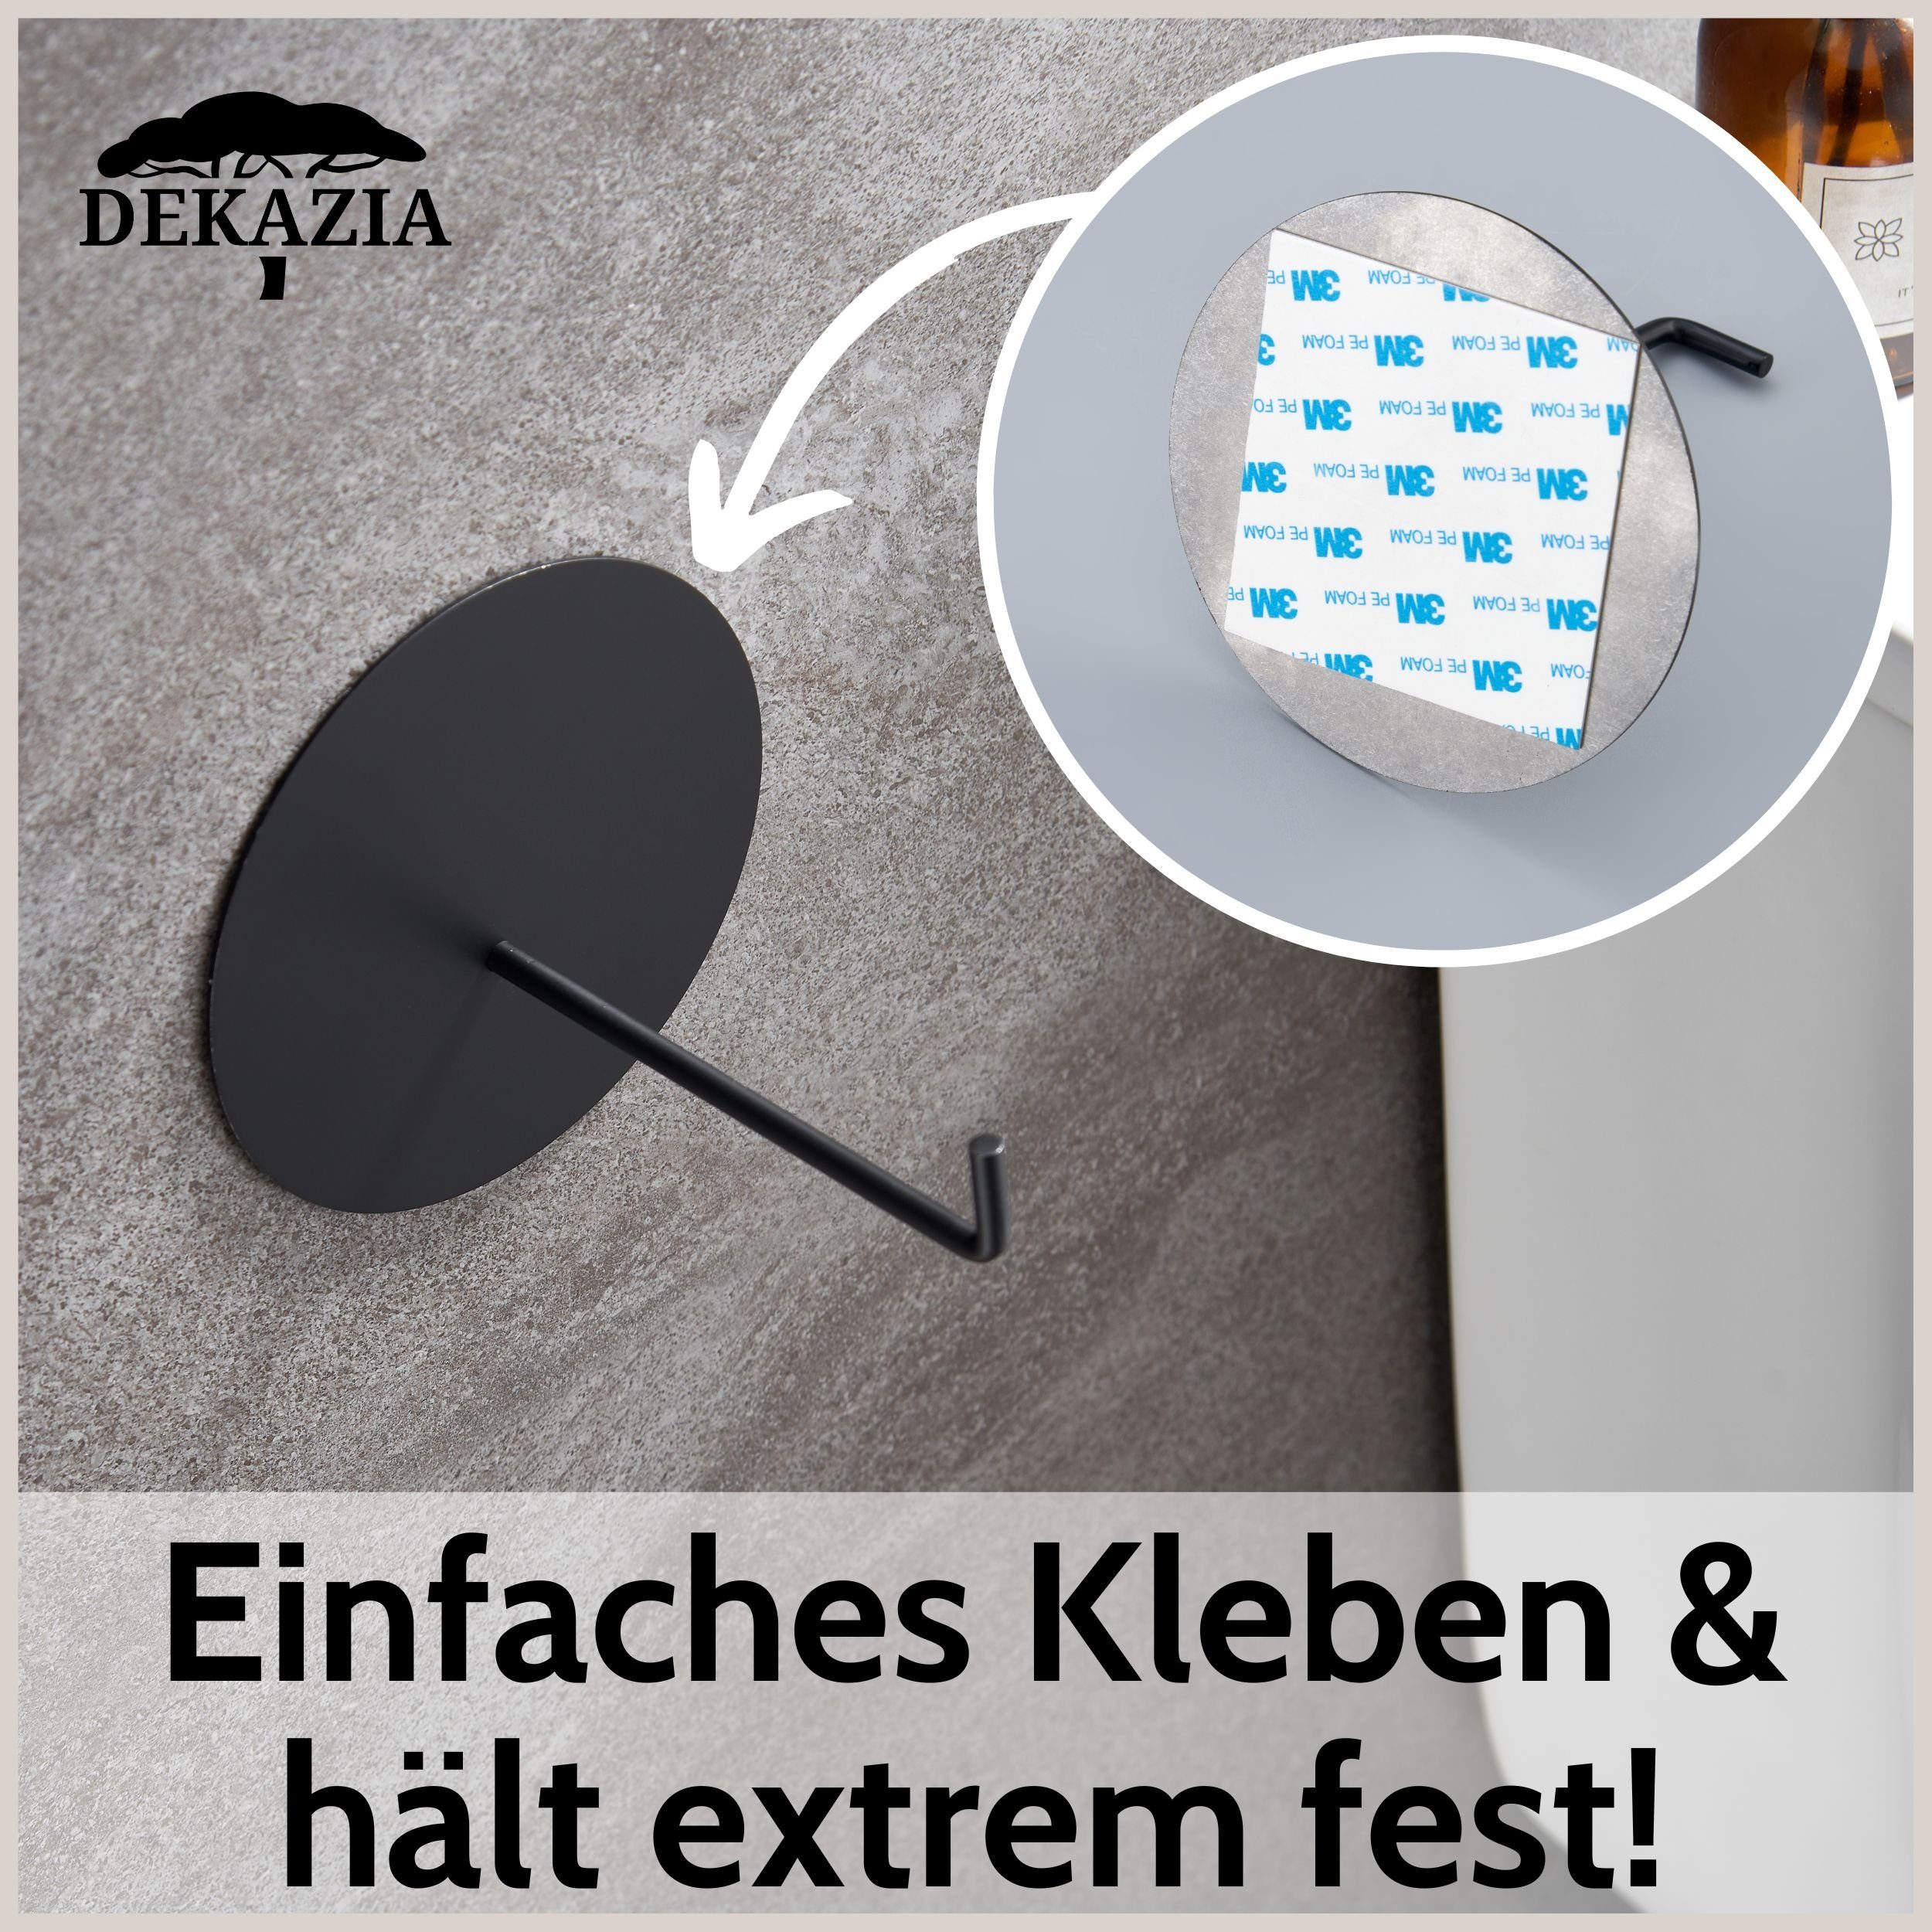 Bohren, DEKAZIA Rostfreier Toilettenpapierhalter, ohne selbstklebend, Design schwarz-matt Edelstahl, Besonderes